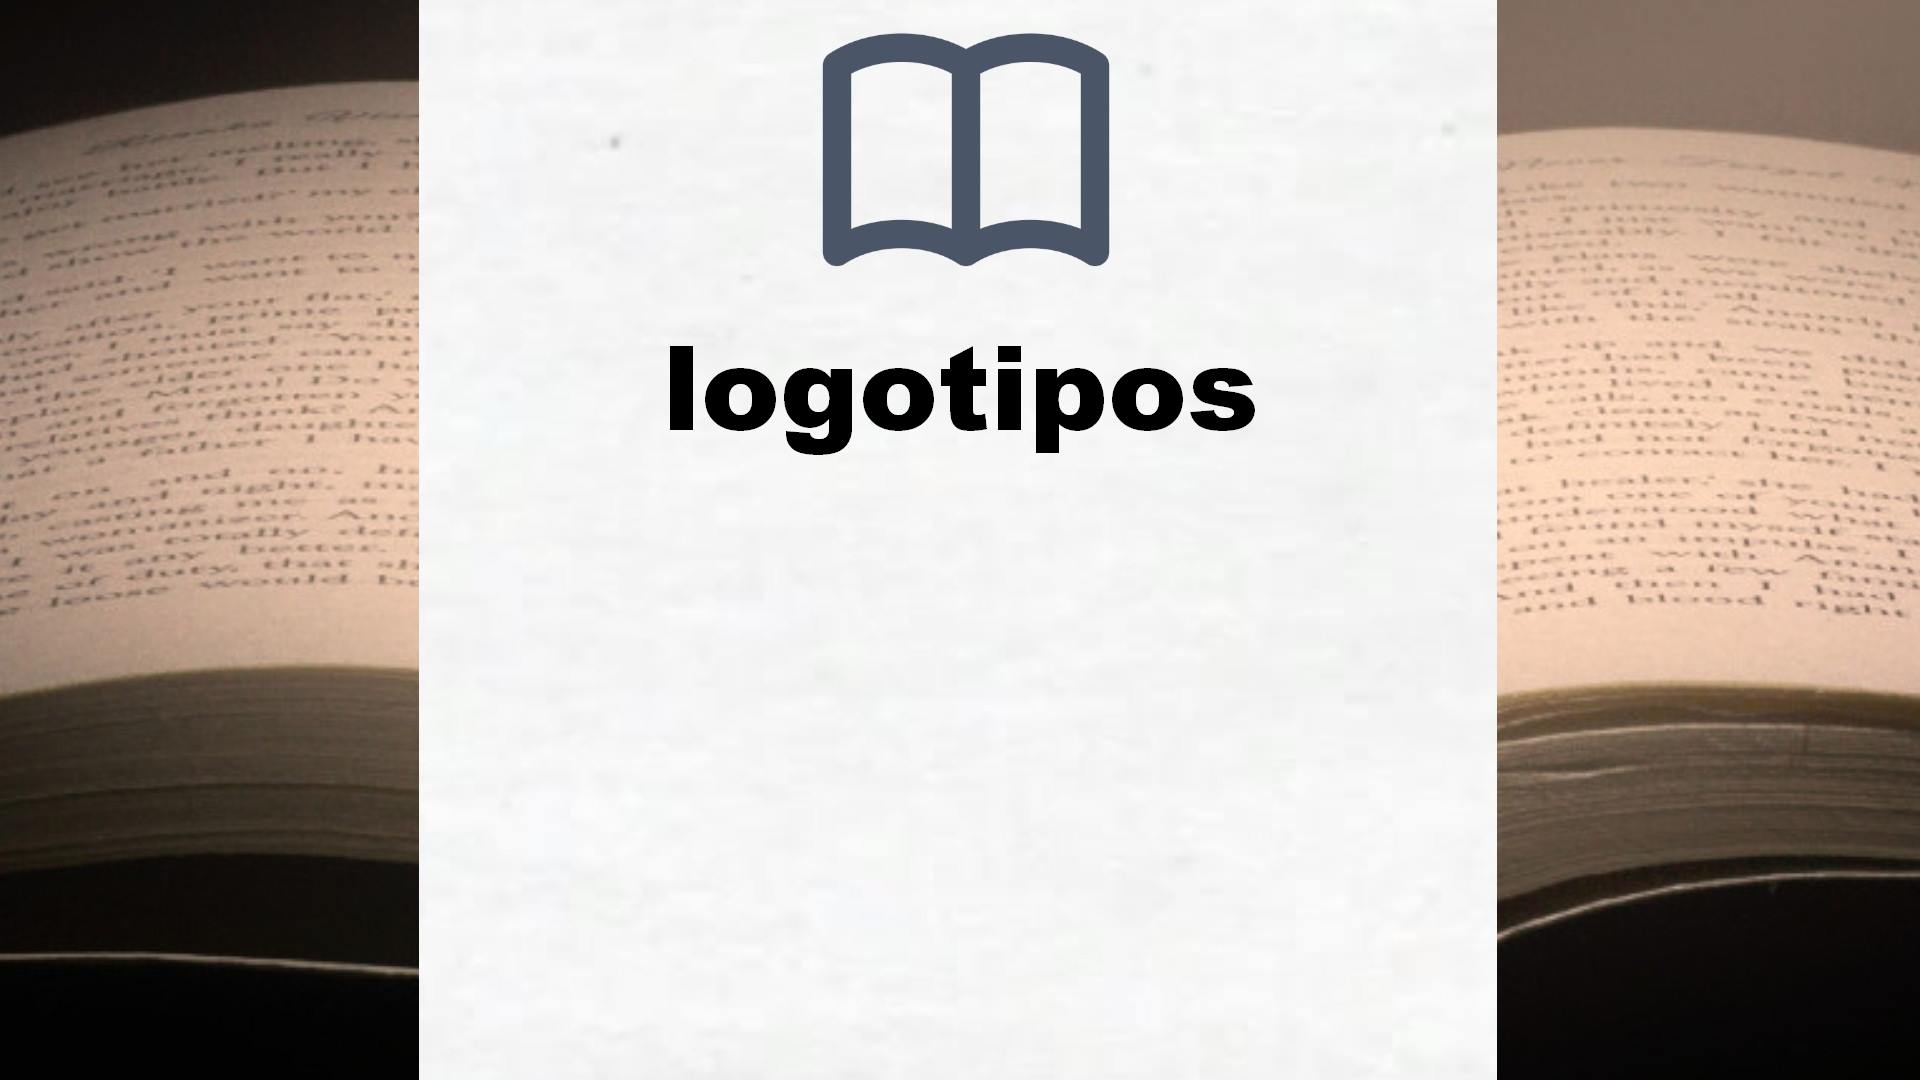 Libros sobre logotipos